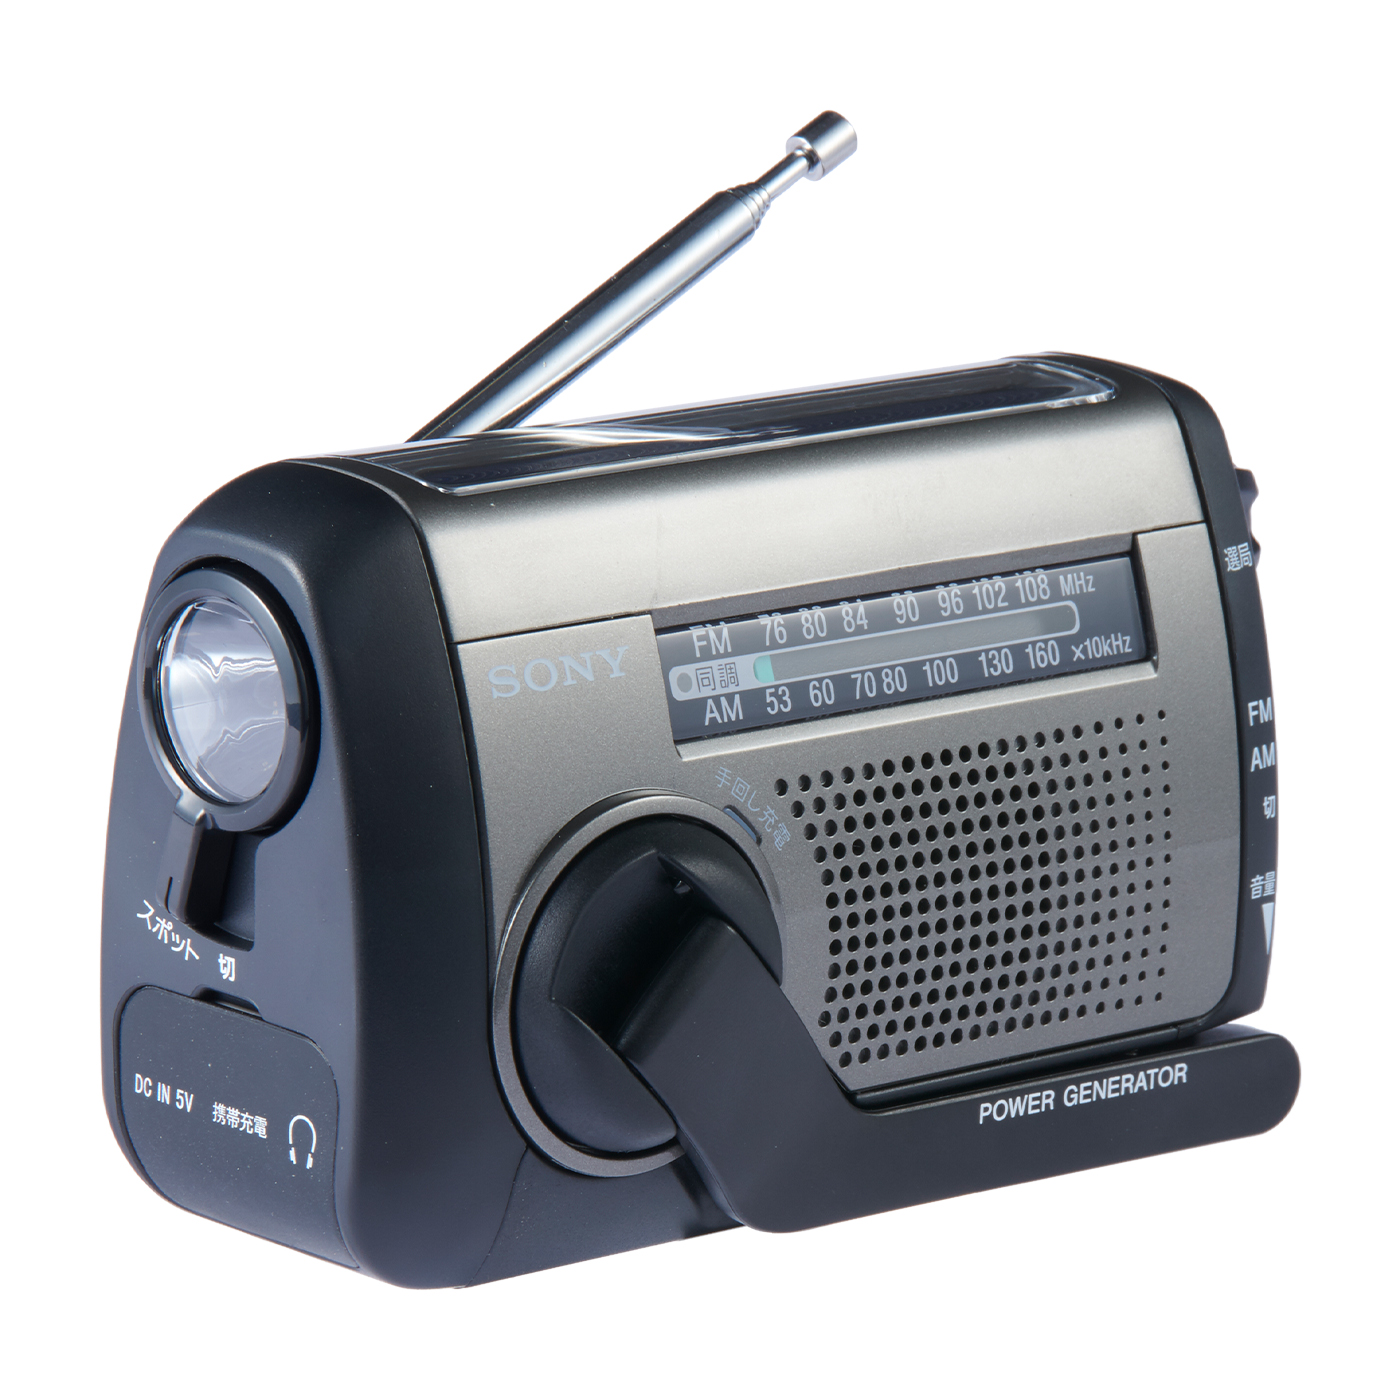 SONY 携帯ラジオ - ラジオ